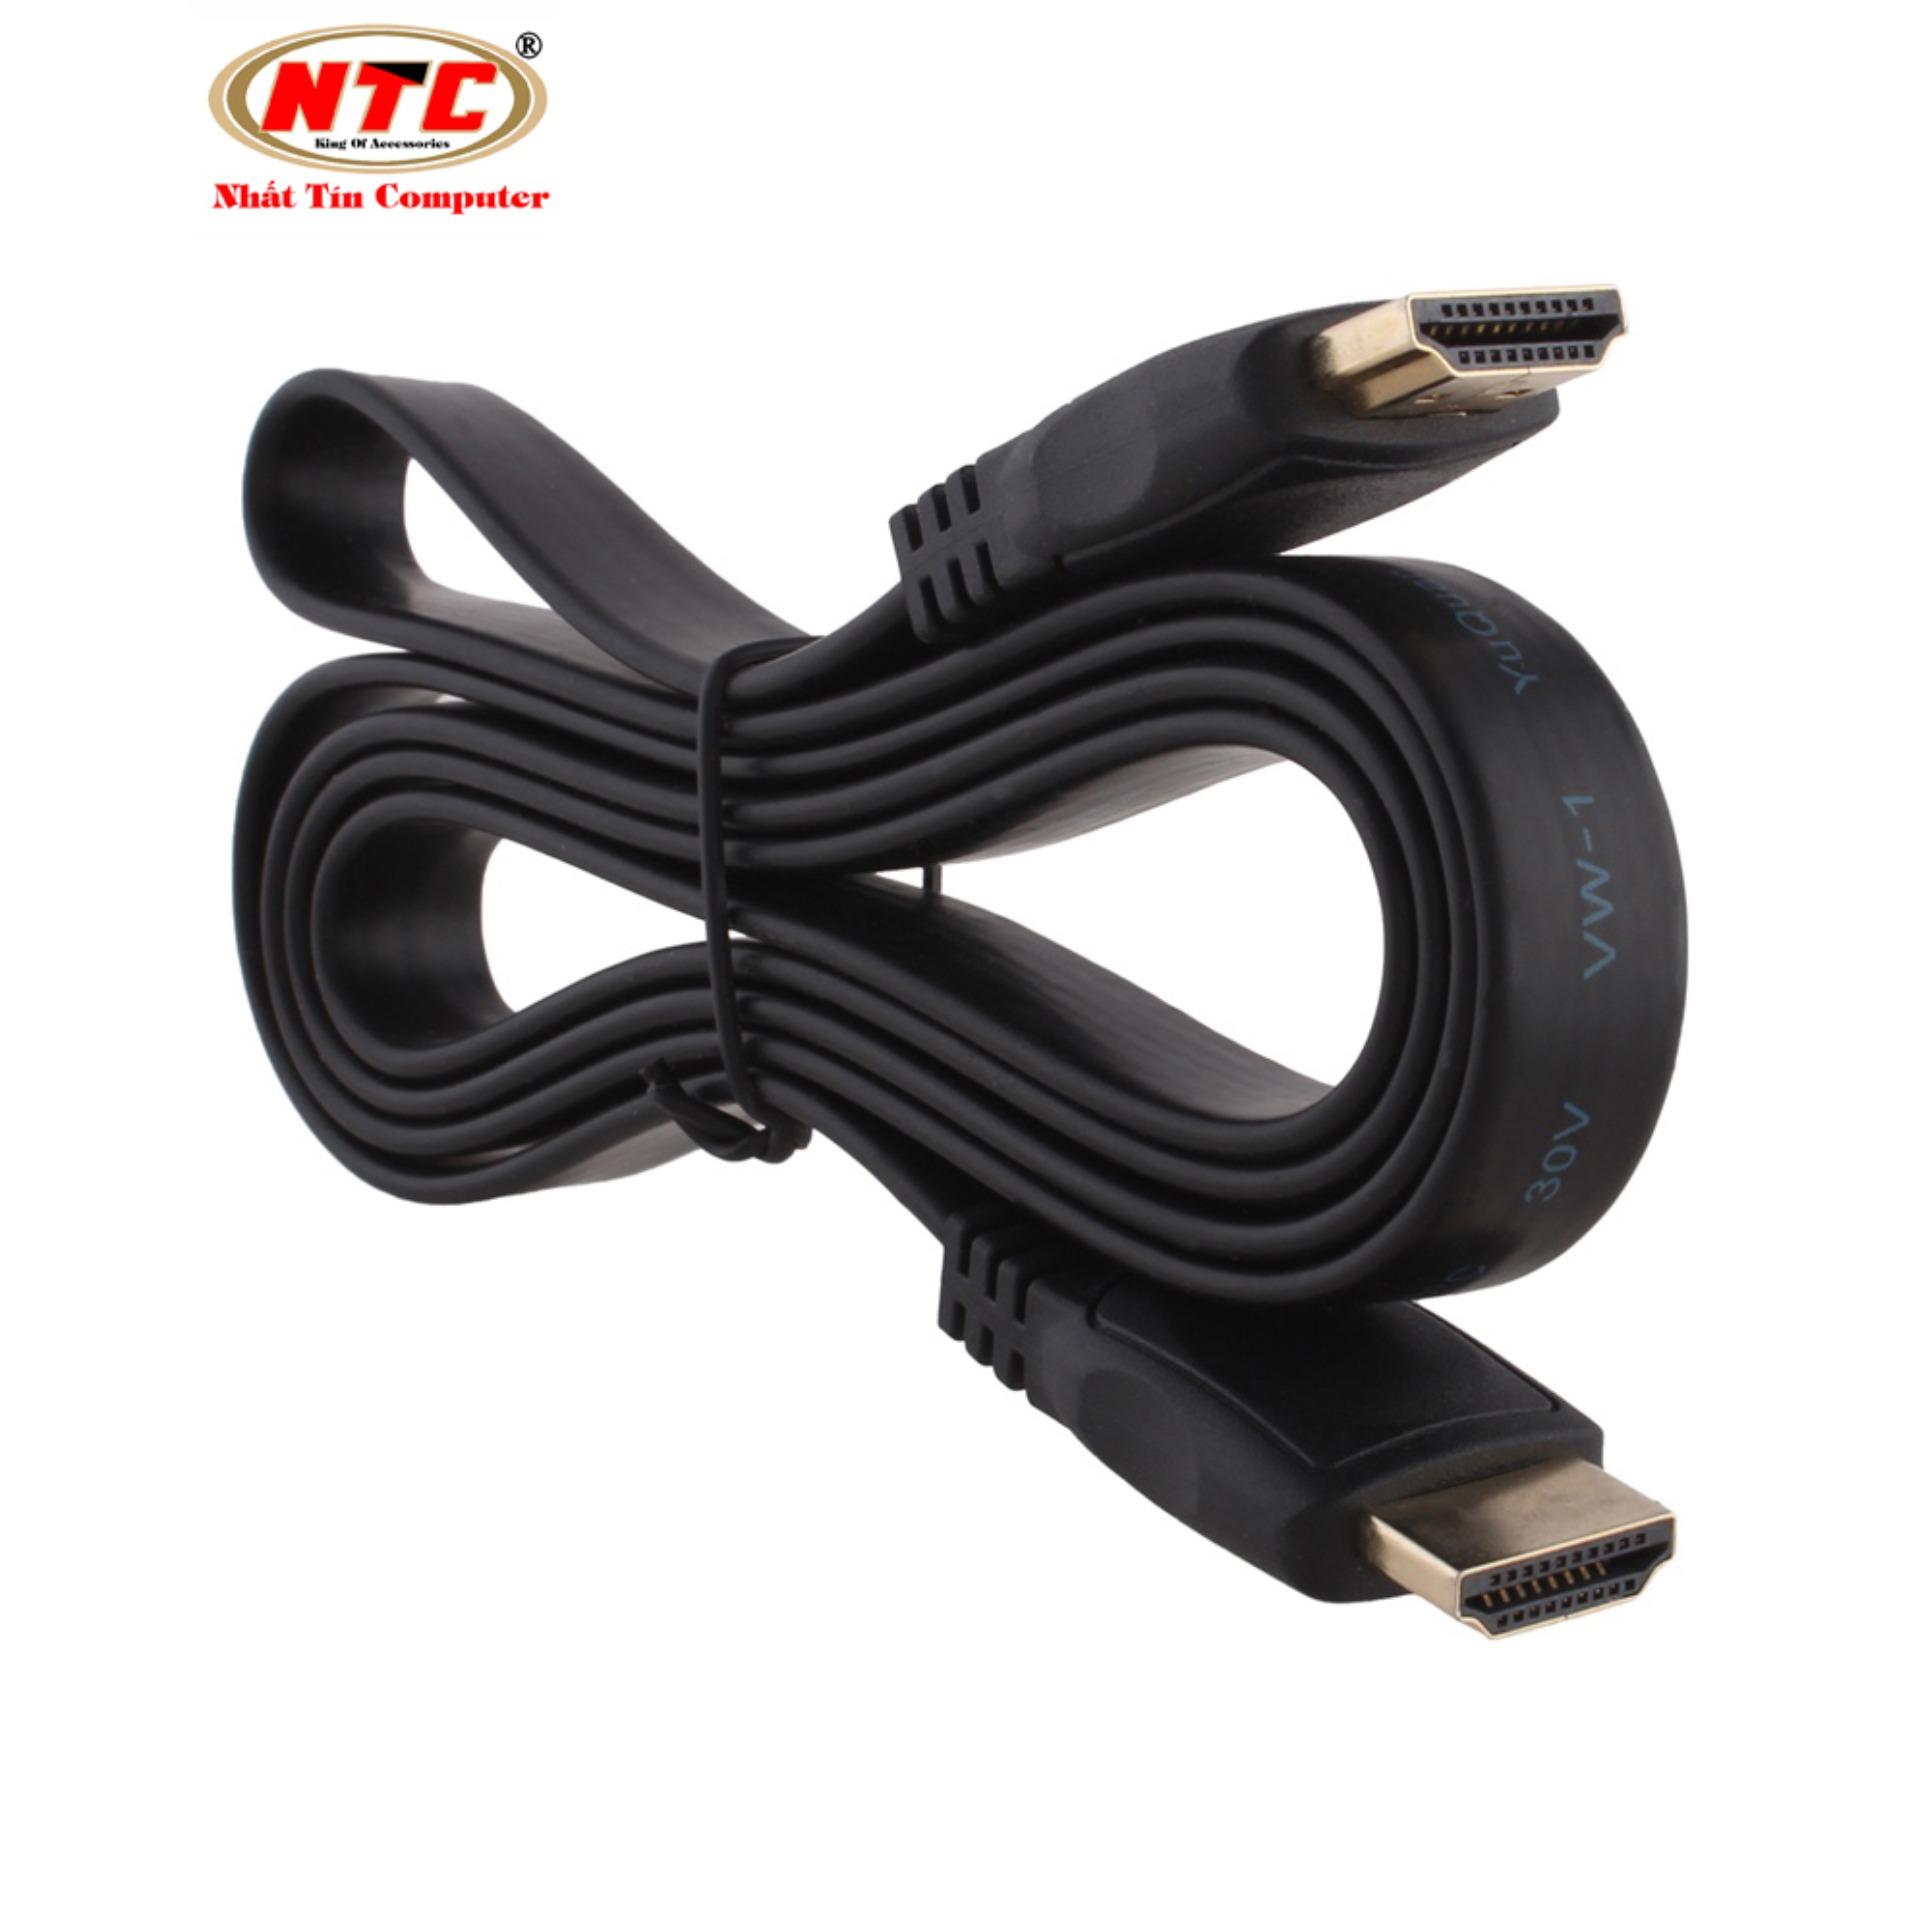 Cáp HDMI loại dẹp dài 1.5m VS - Full HD 1080p (đen)